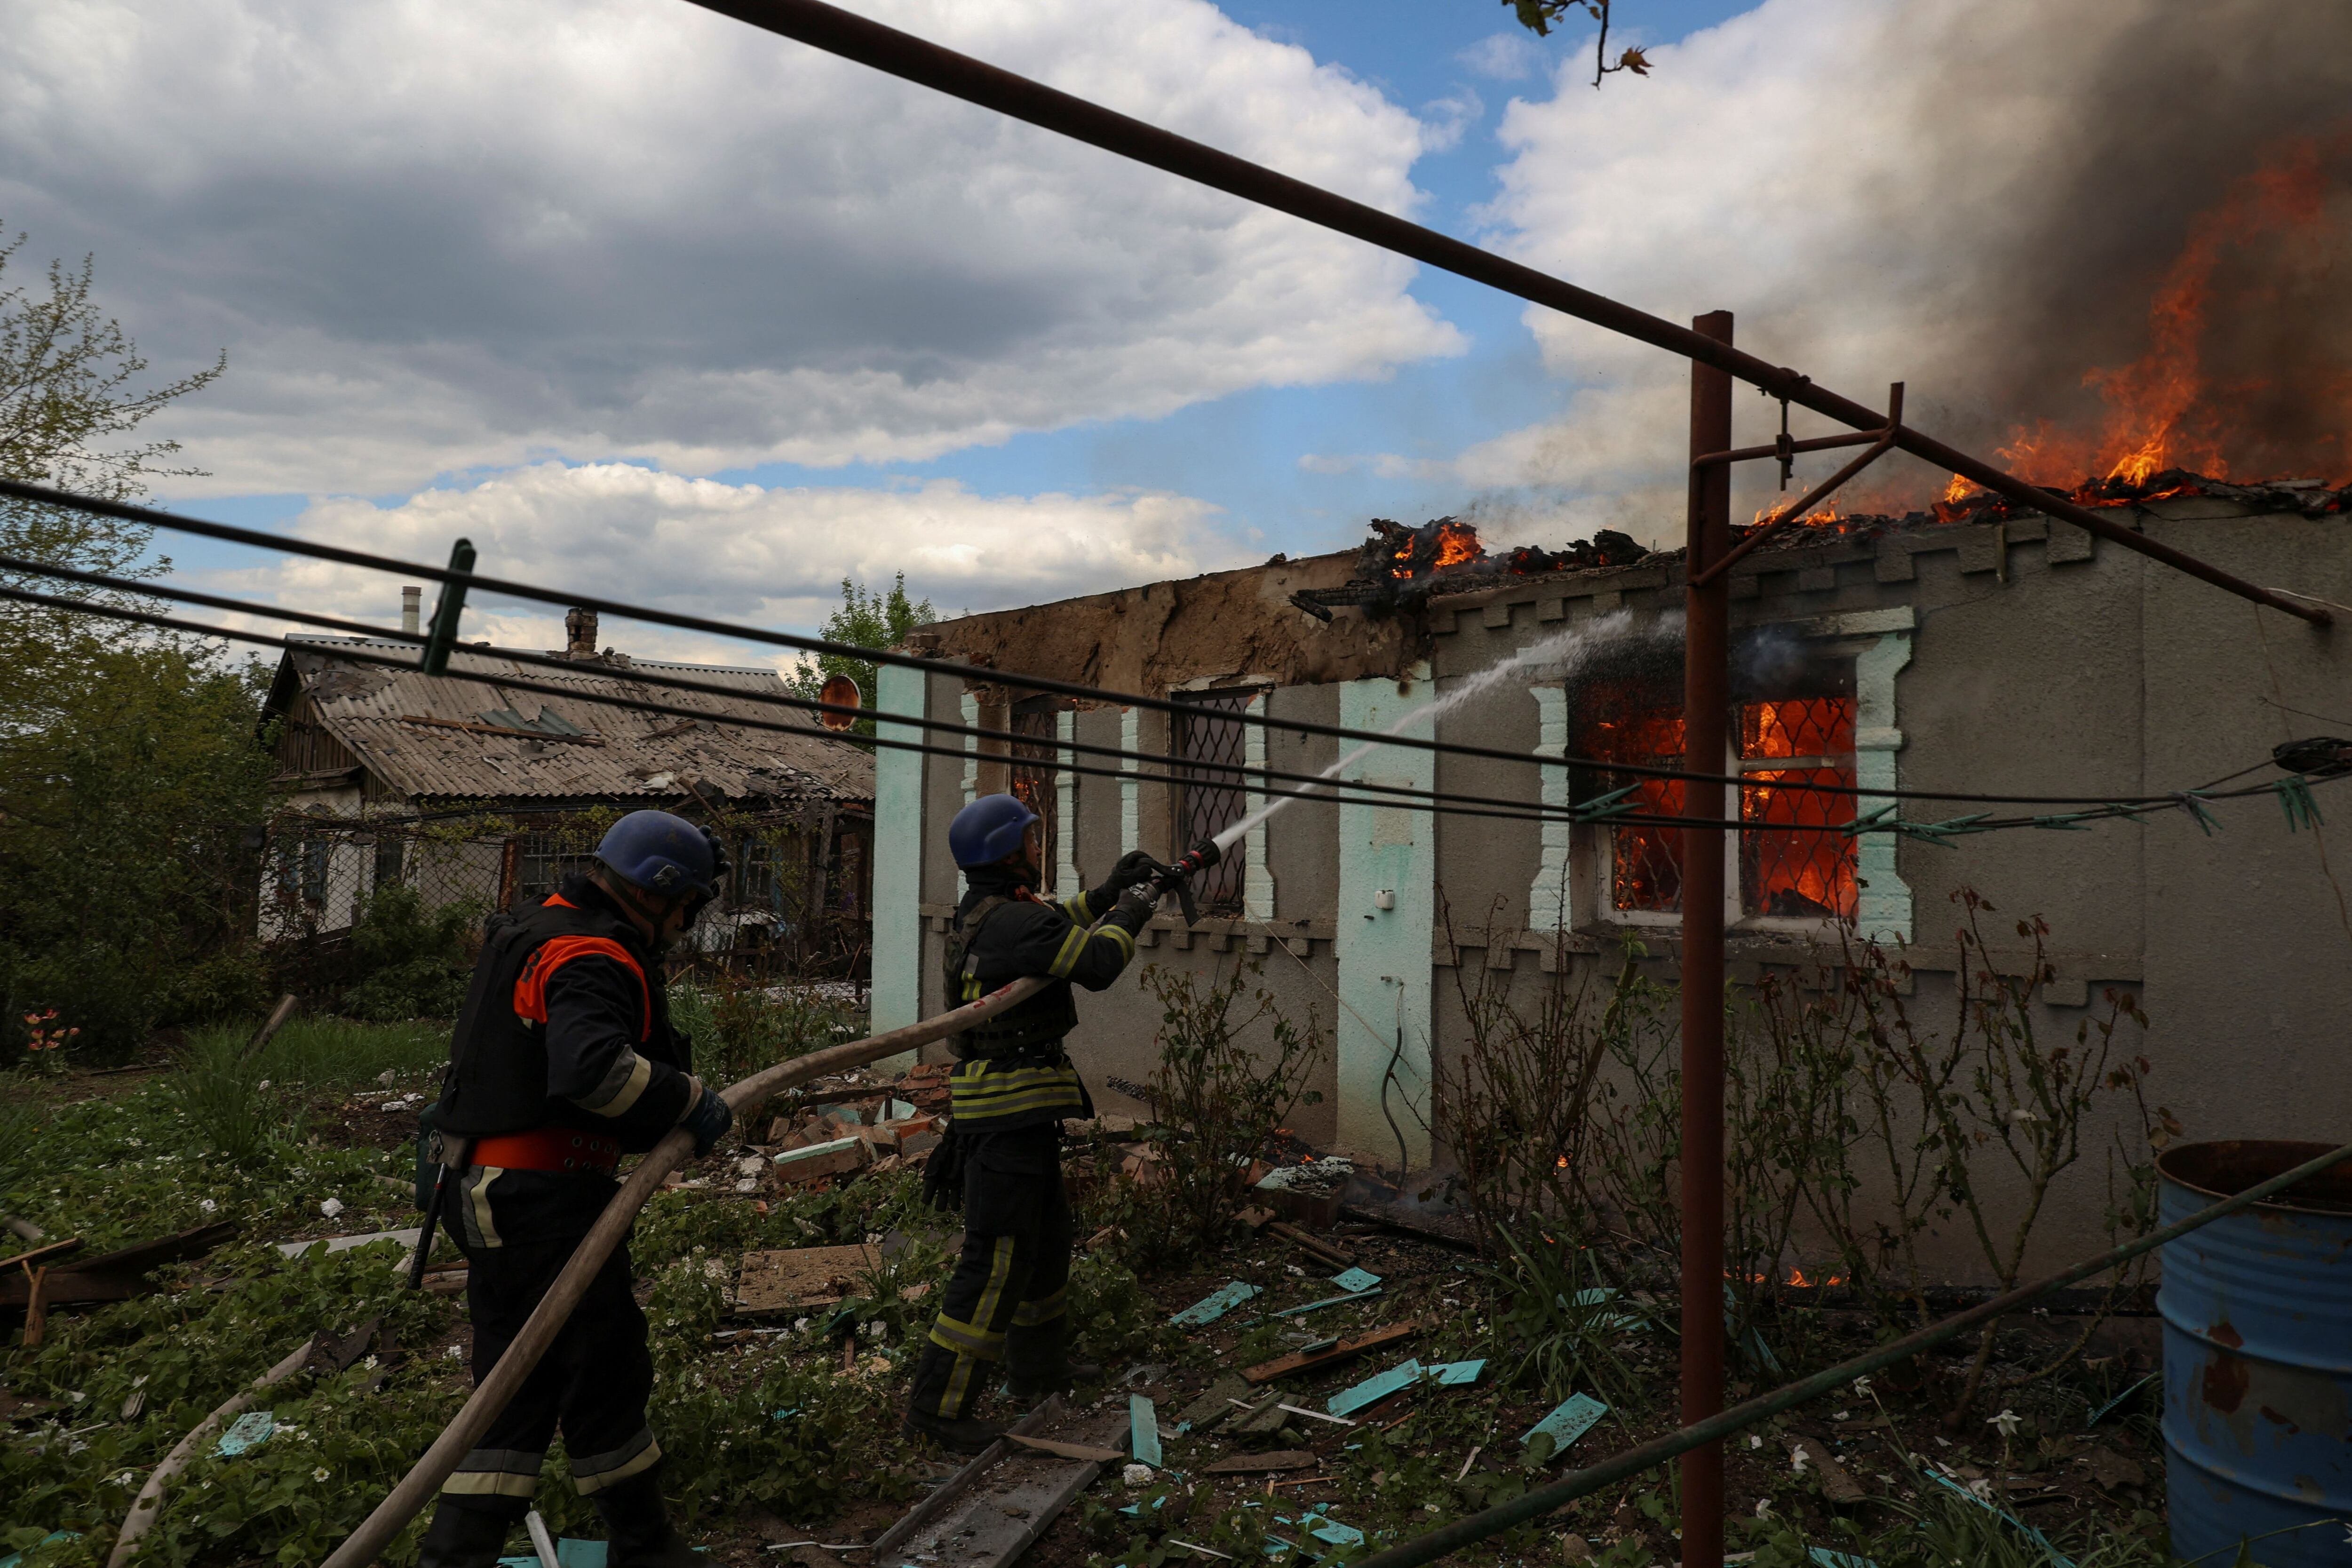 El ataque dejó al menos dos muertos y diez heridos. Kostiantynivka, región de Donetsk, Ucrania 12 de mayo 2023. REUTERS/Sofiia Gatilova